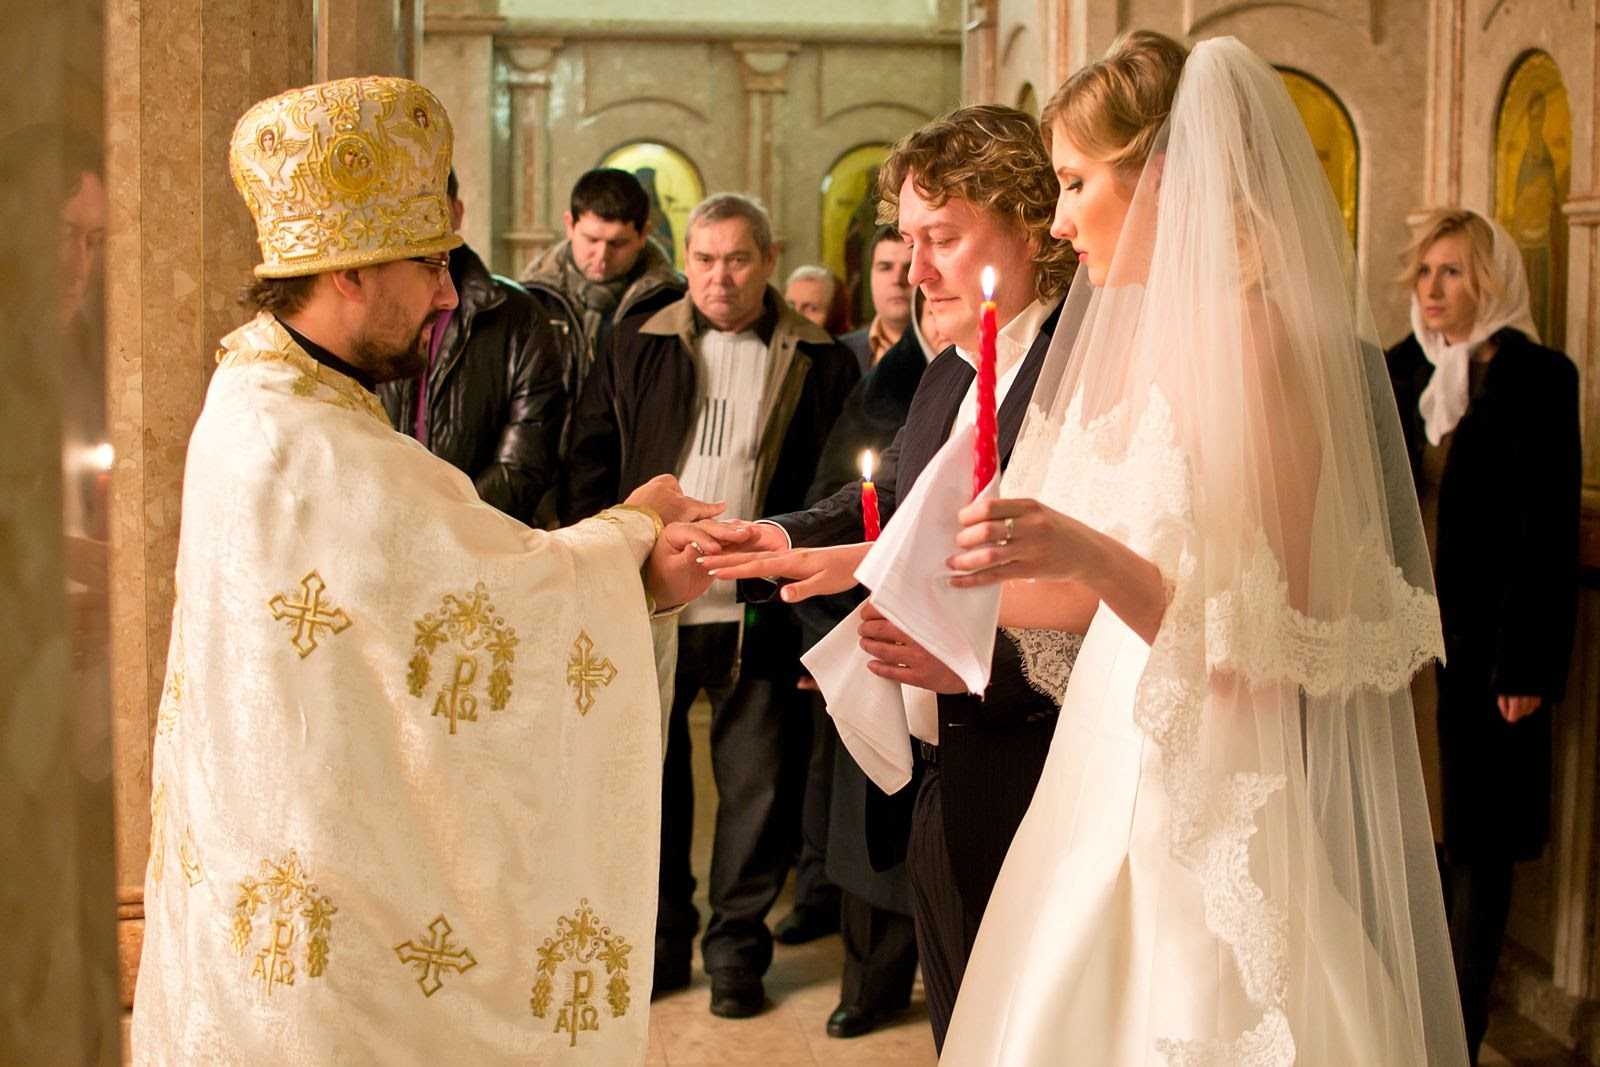 Правила венчания в православной церкви (фото): обряд таинства, видео, отзывы